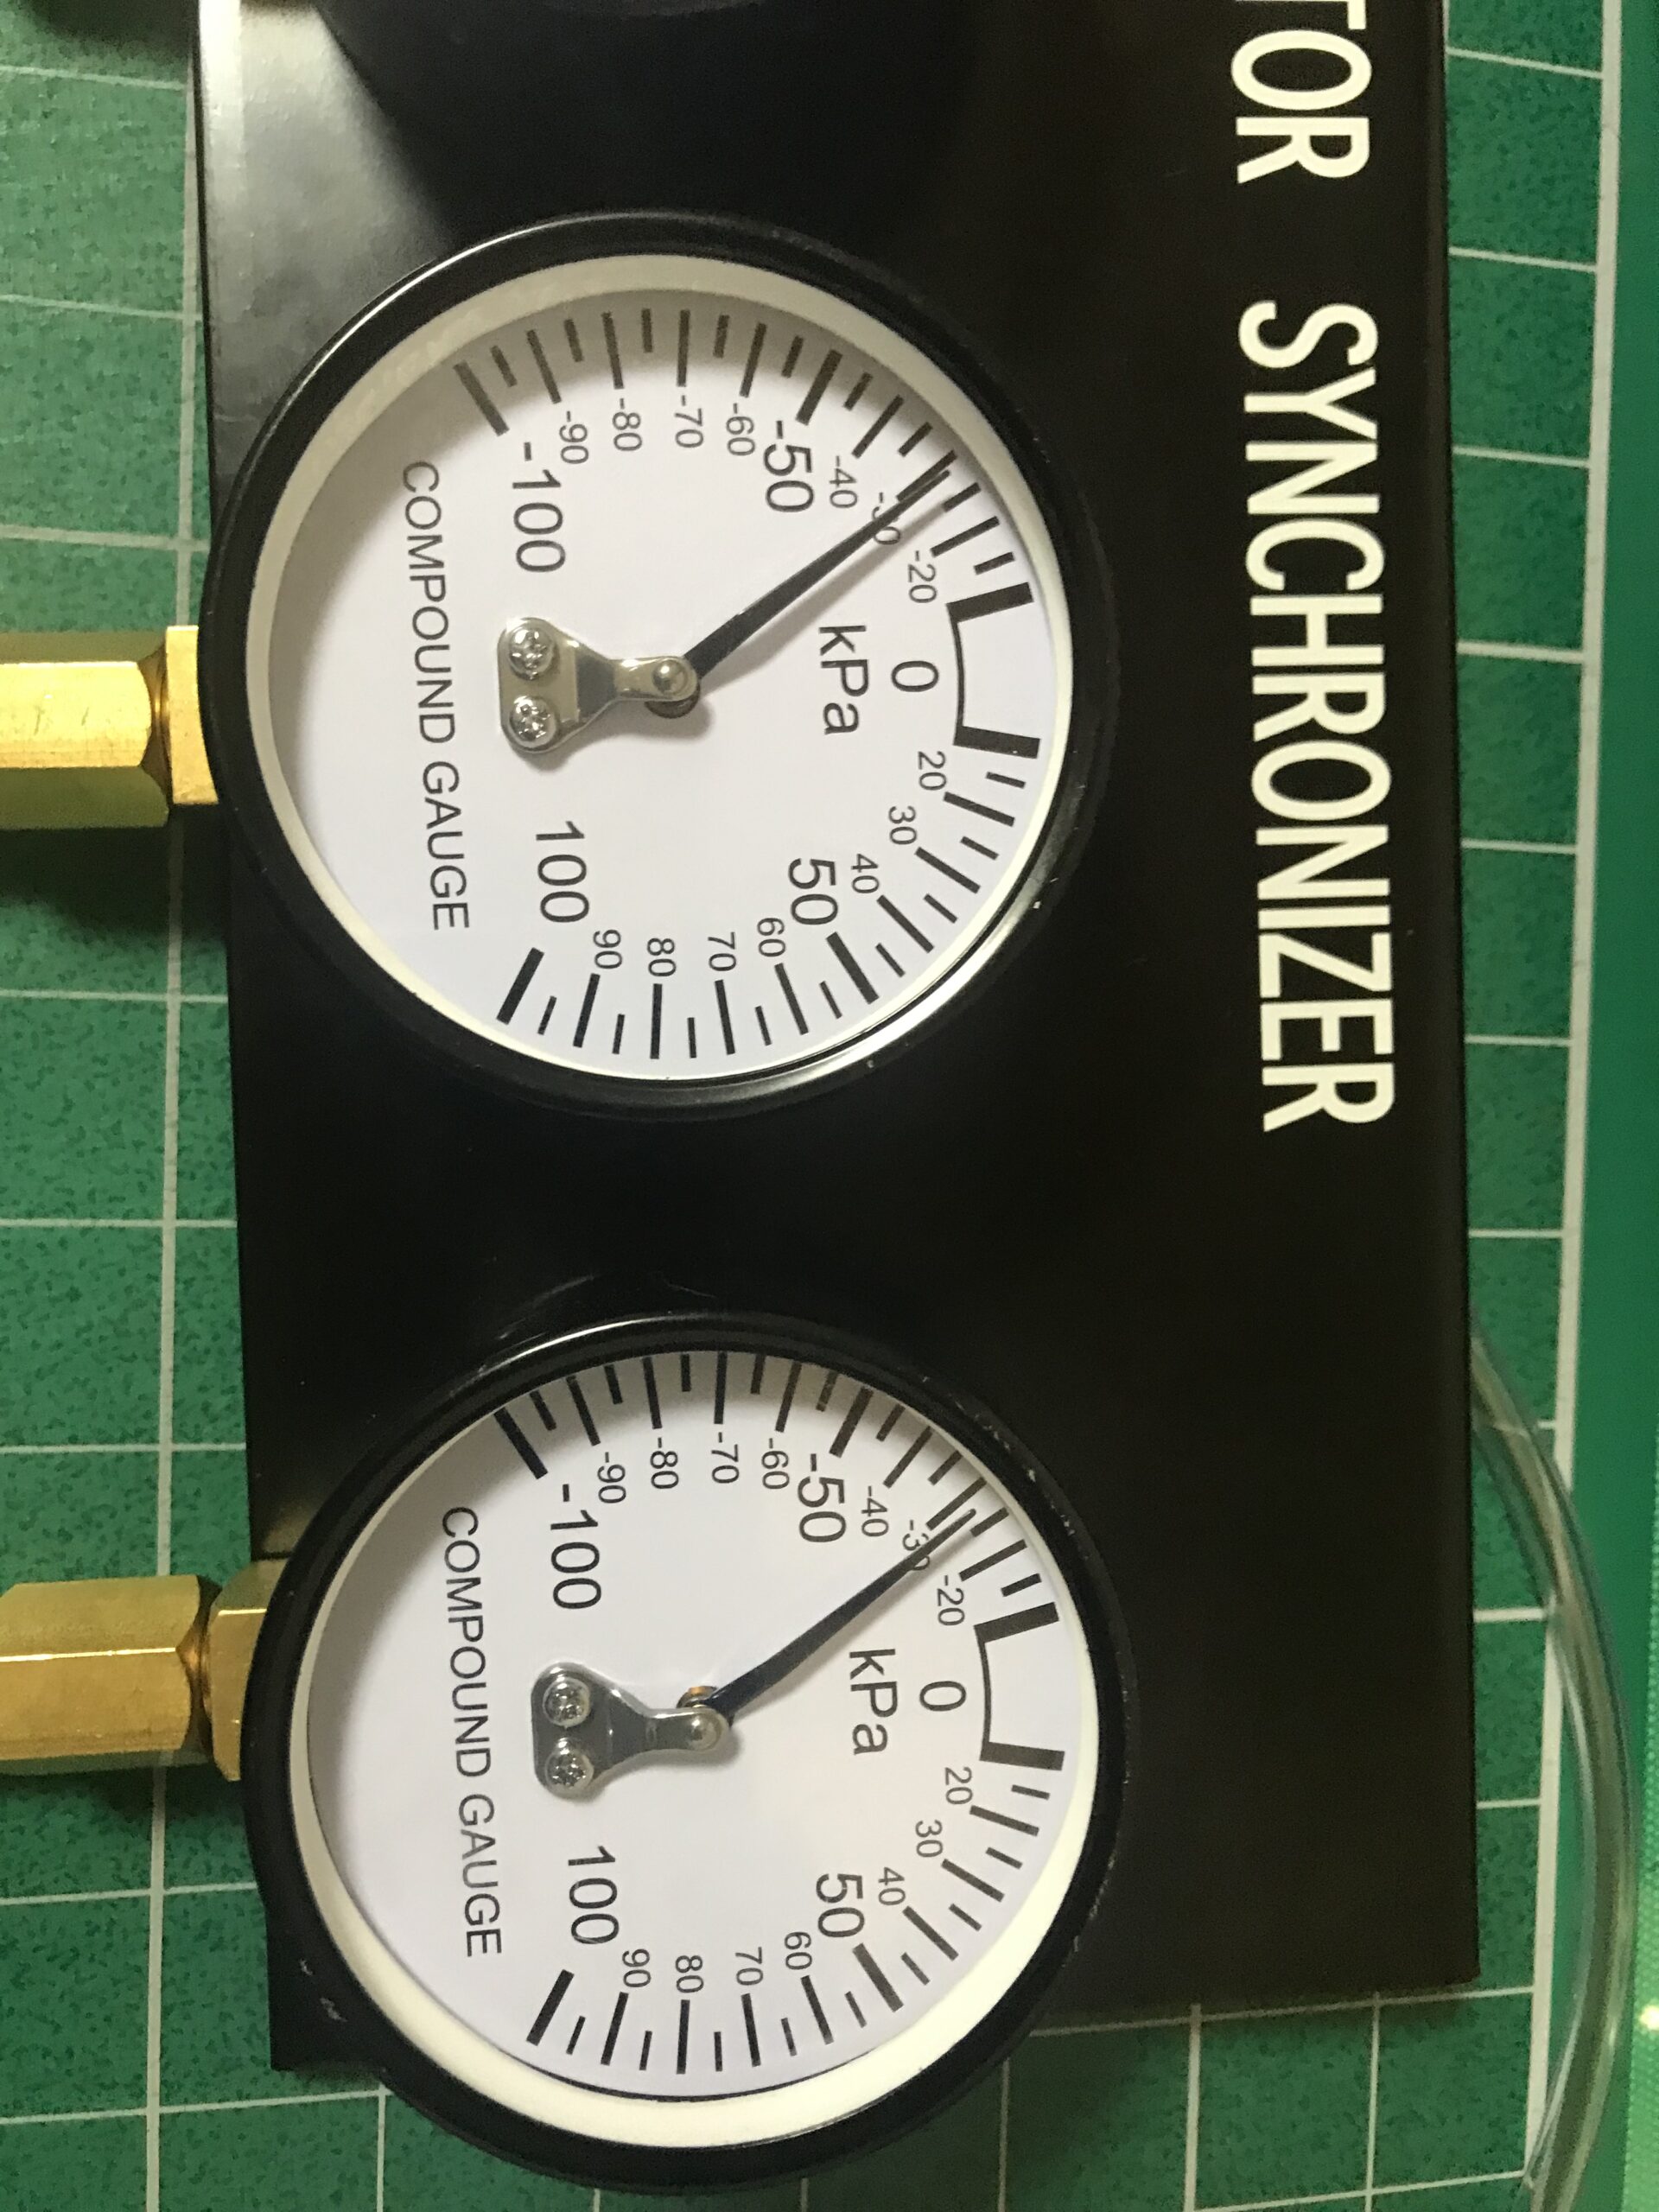 Vacuum gauge needle calibration